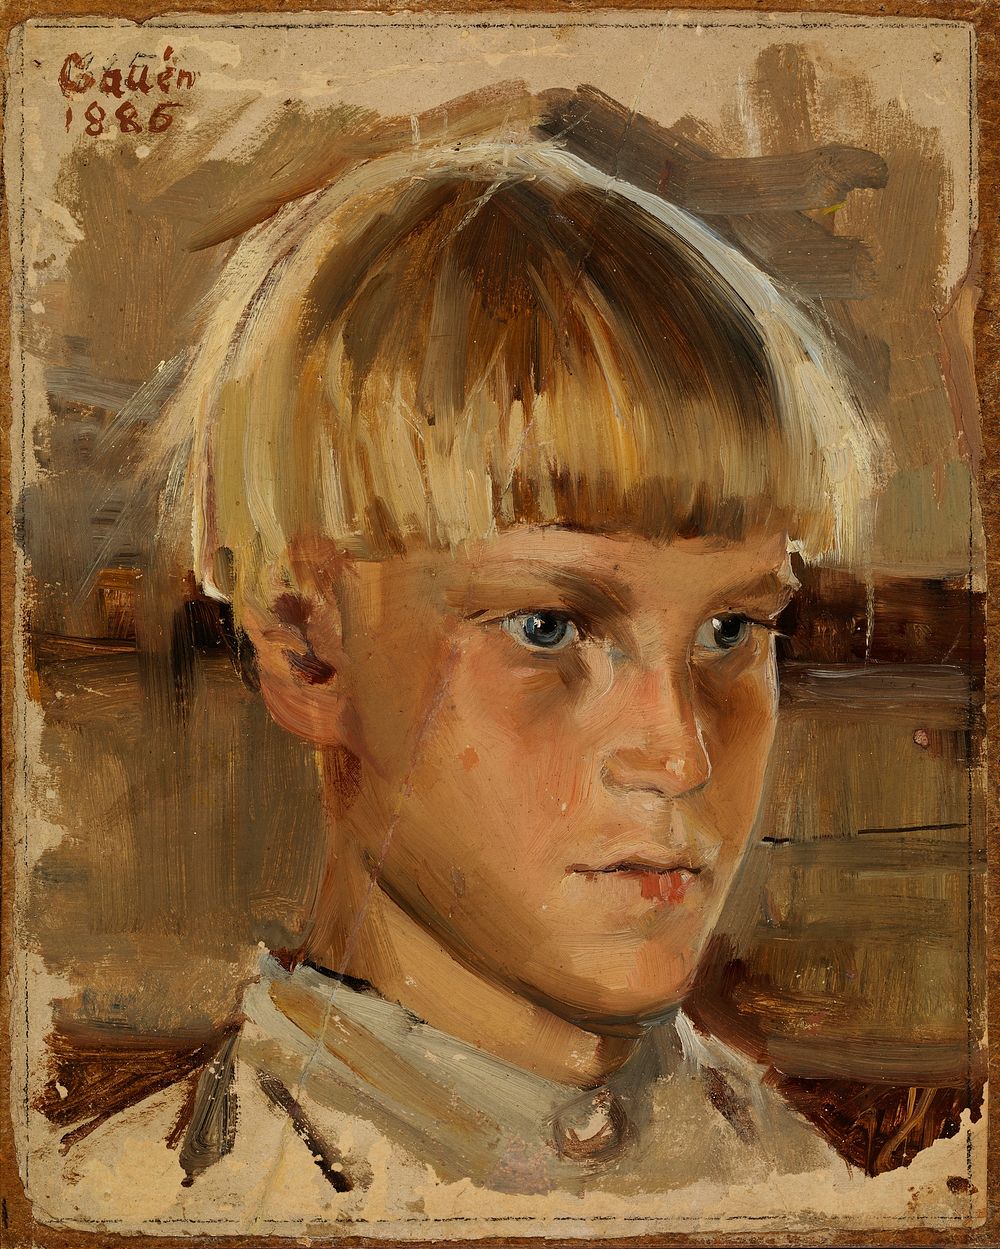 Orphan boy, 1886